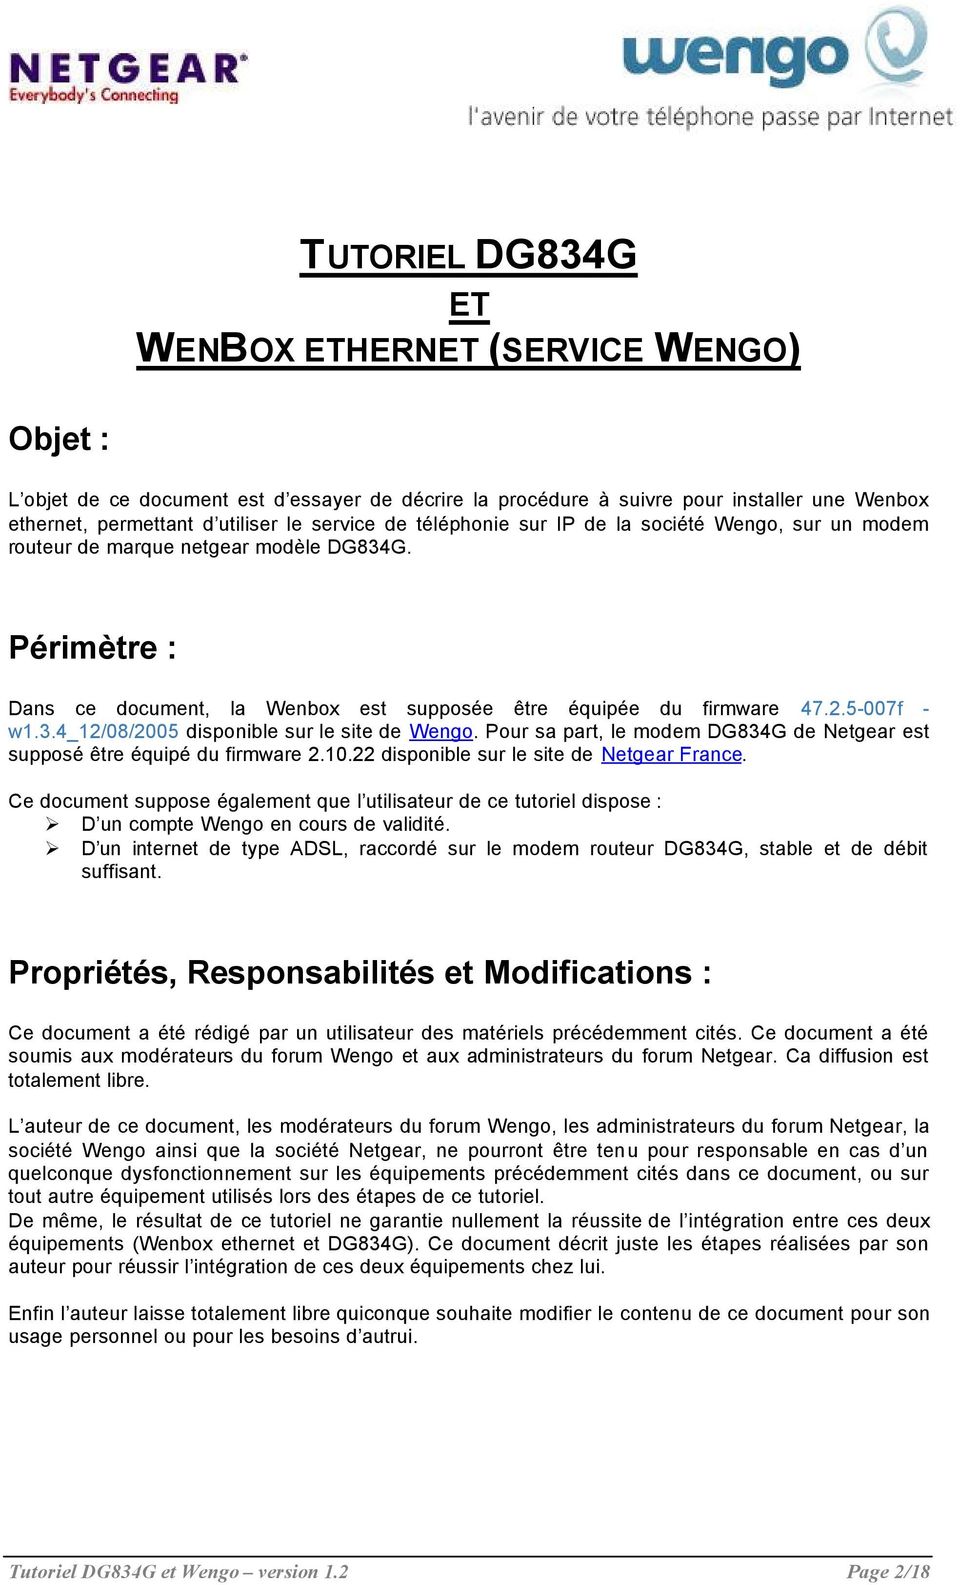 Pour sa part, le modem DG834G de Netgear est supposé être équipé du firmware 2.10.22 disponible sur le site de Netgear France.